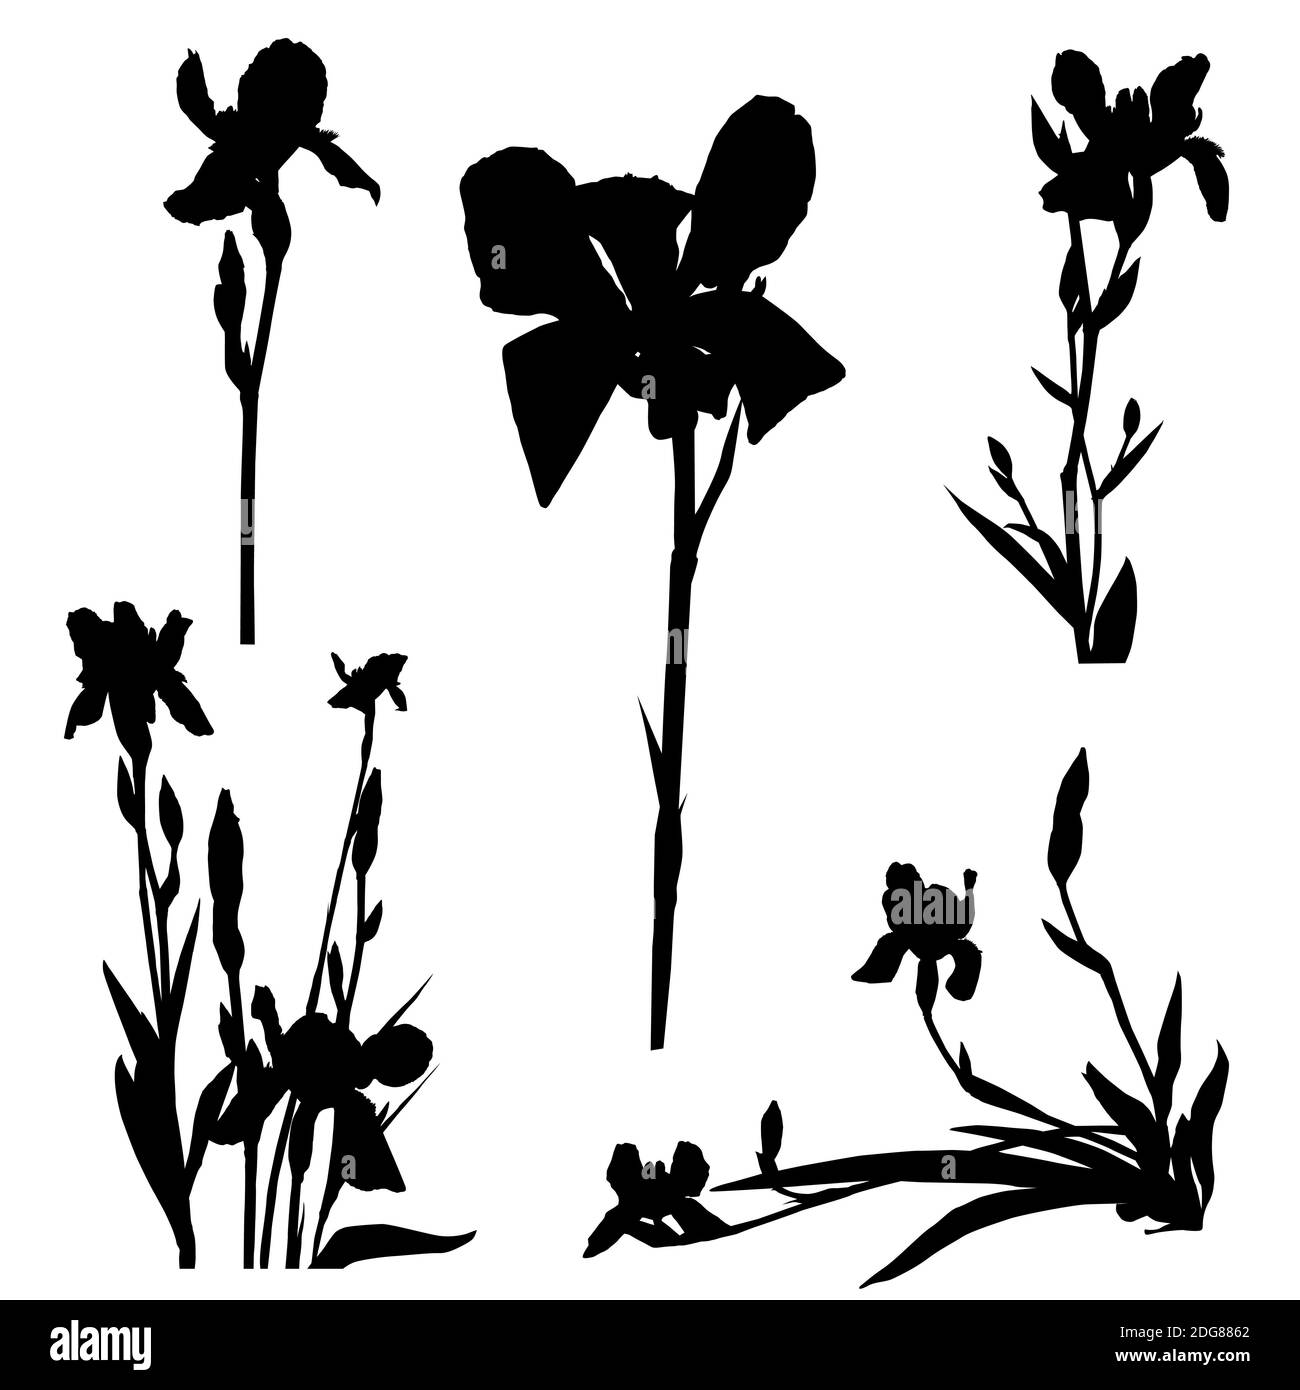 Iris silhouettes series Stock Photo